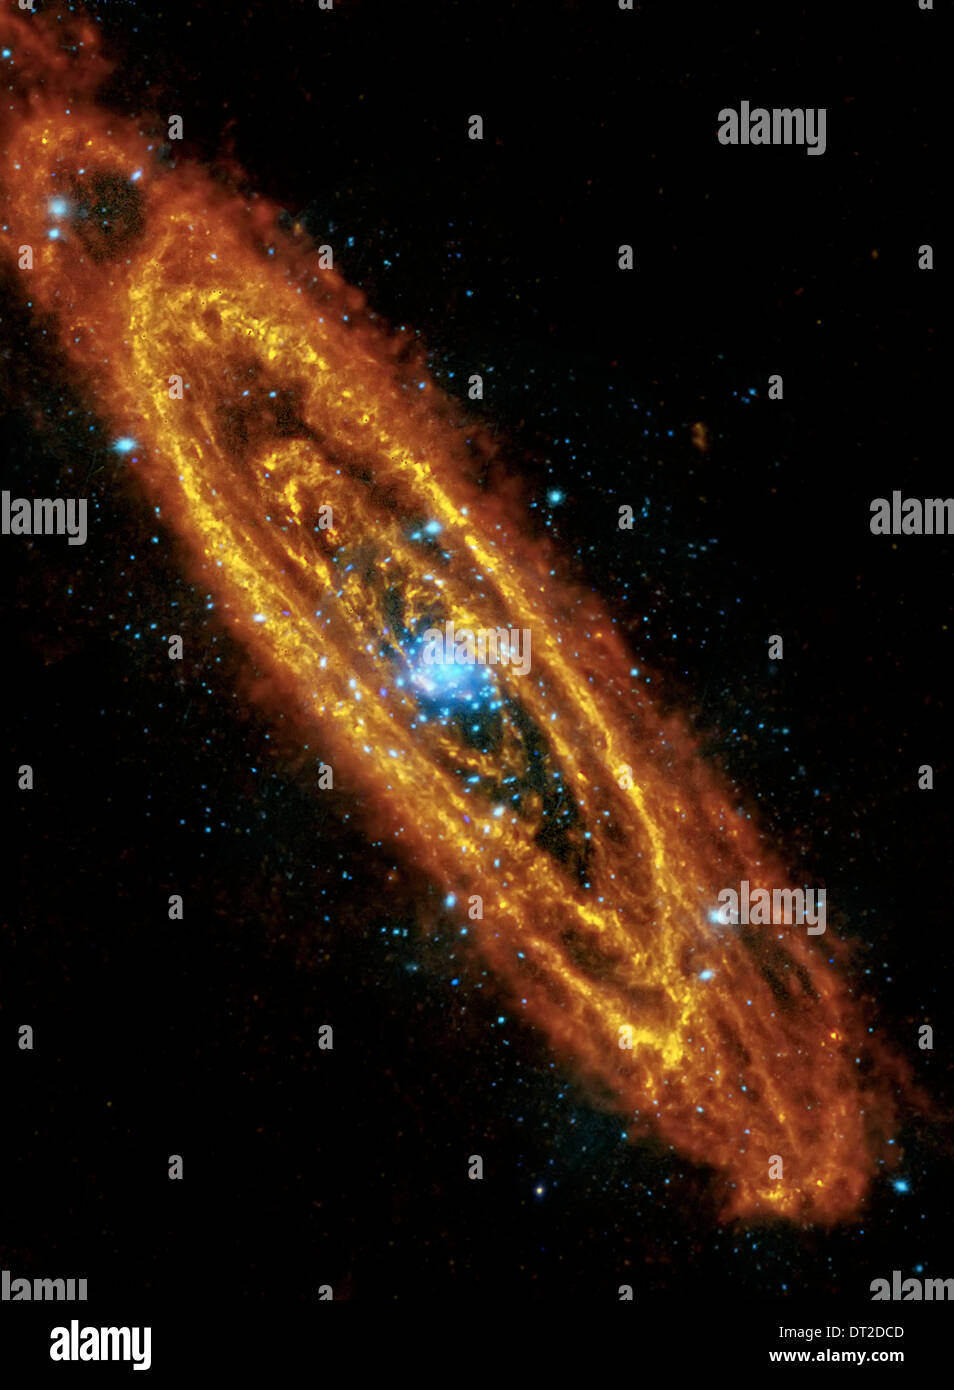 Vista l'Andromeda galassia a spirale highlights esplosivo stelle al suo interno e lo scambiatore di calore e polveroso stelle formando nei suoi anelli. Foto Stock